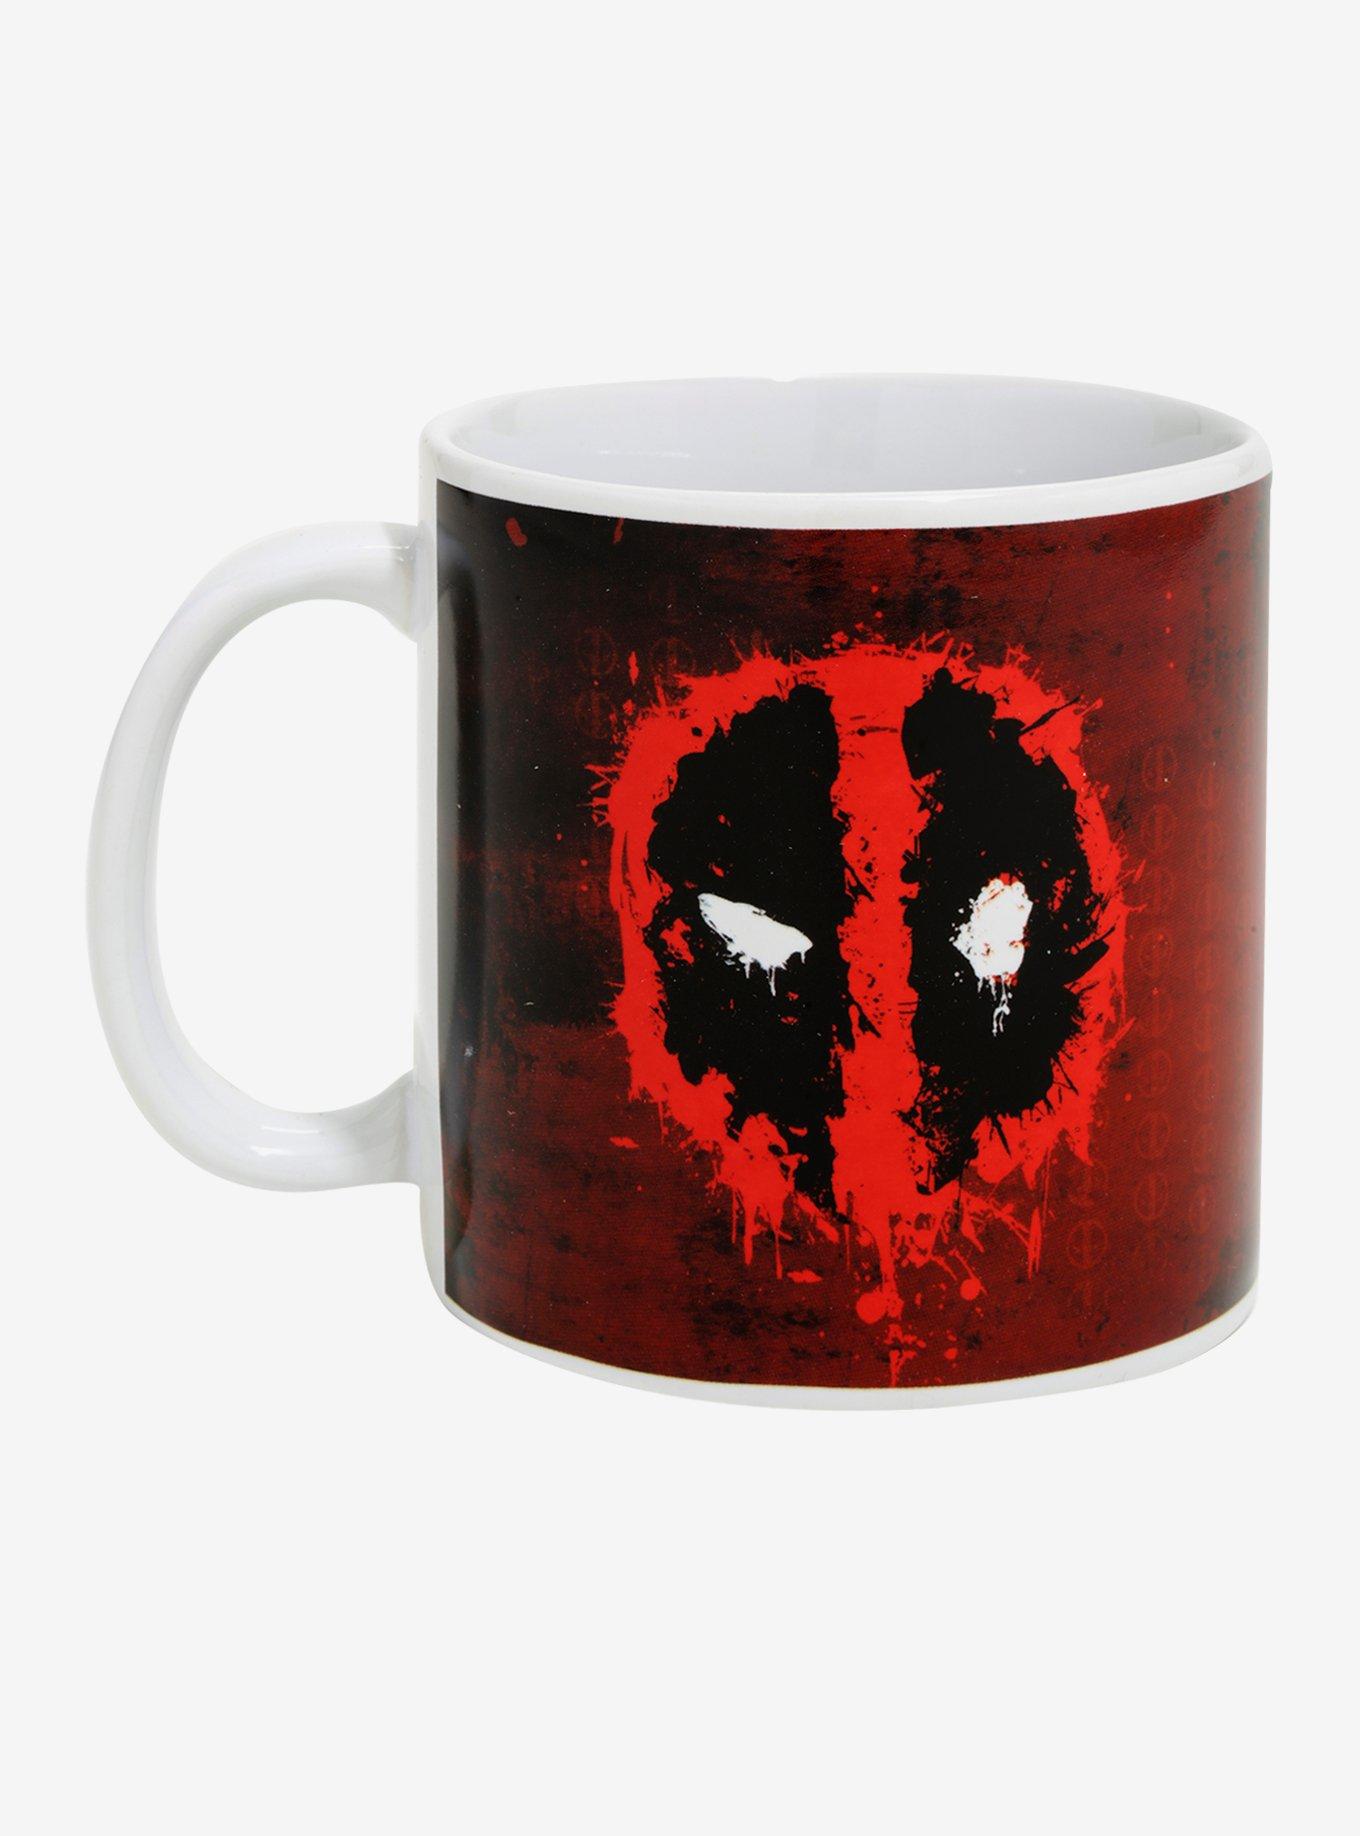 Marvel Deadpool Bang Mug, , hi-res